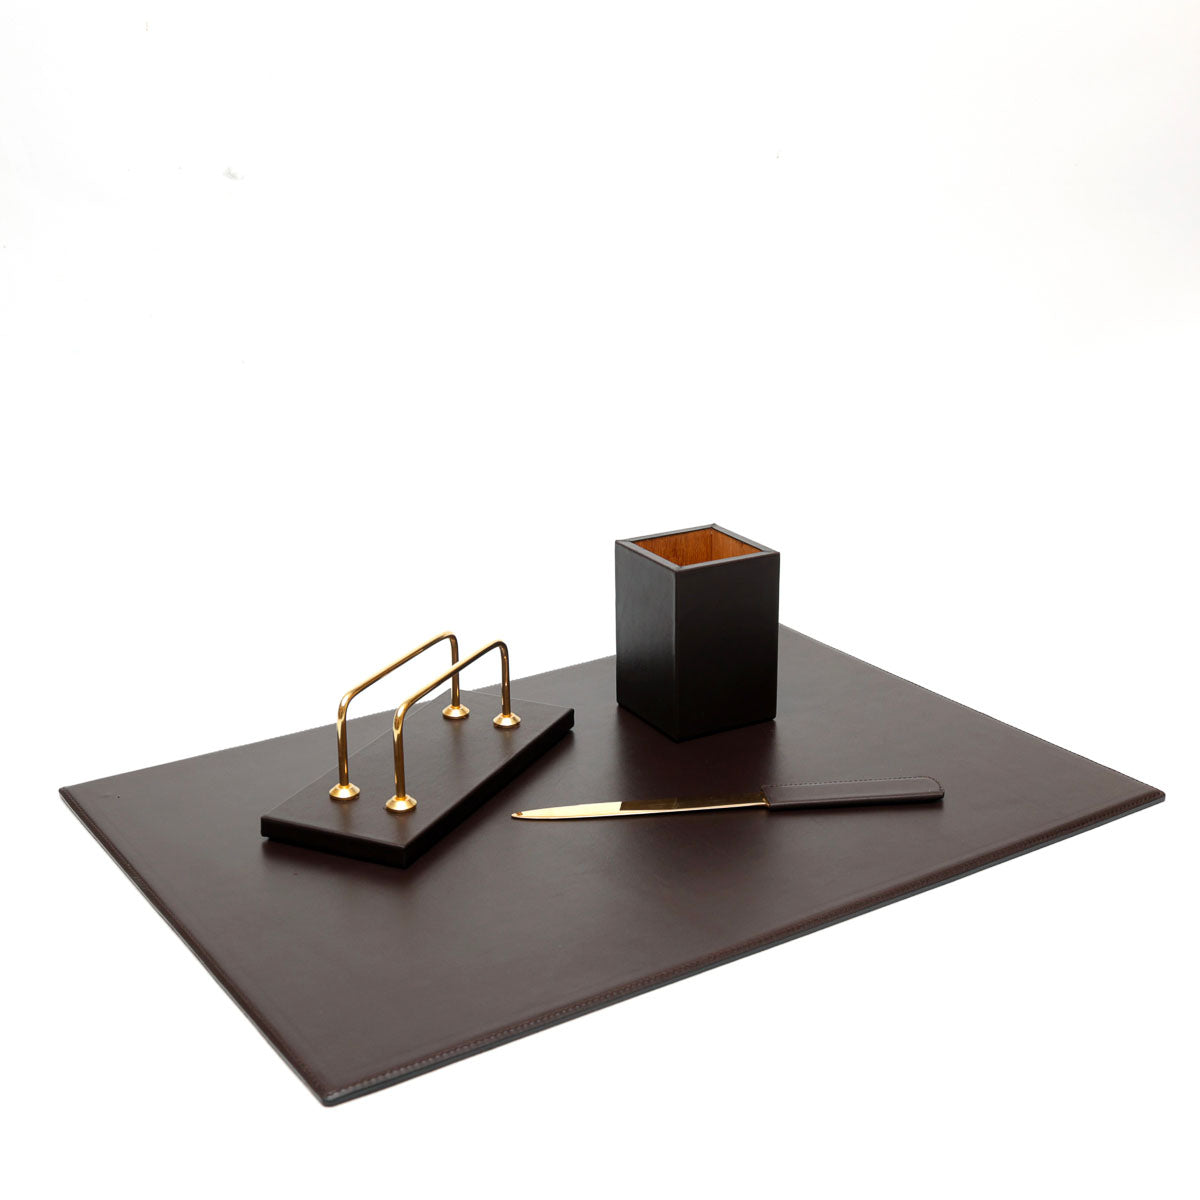 Set da scrivania in pelle color cioccolato formato da sottomano,porta penne, taglia carte e porta lettere,prodotto da Pianigiani bags.